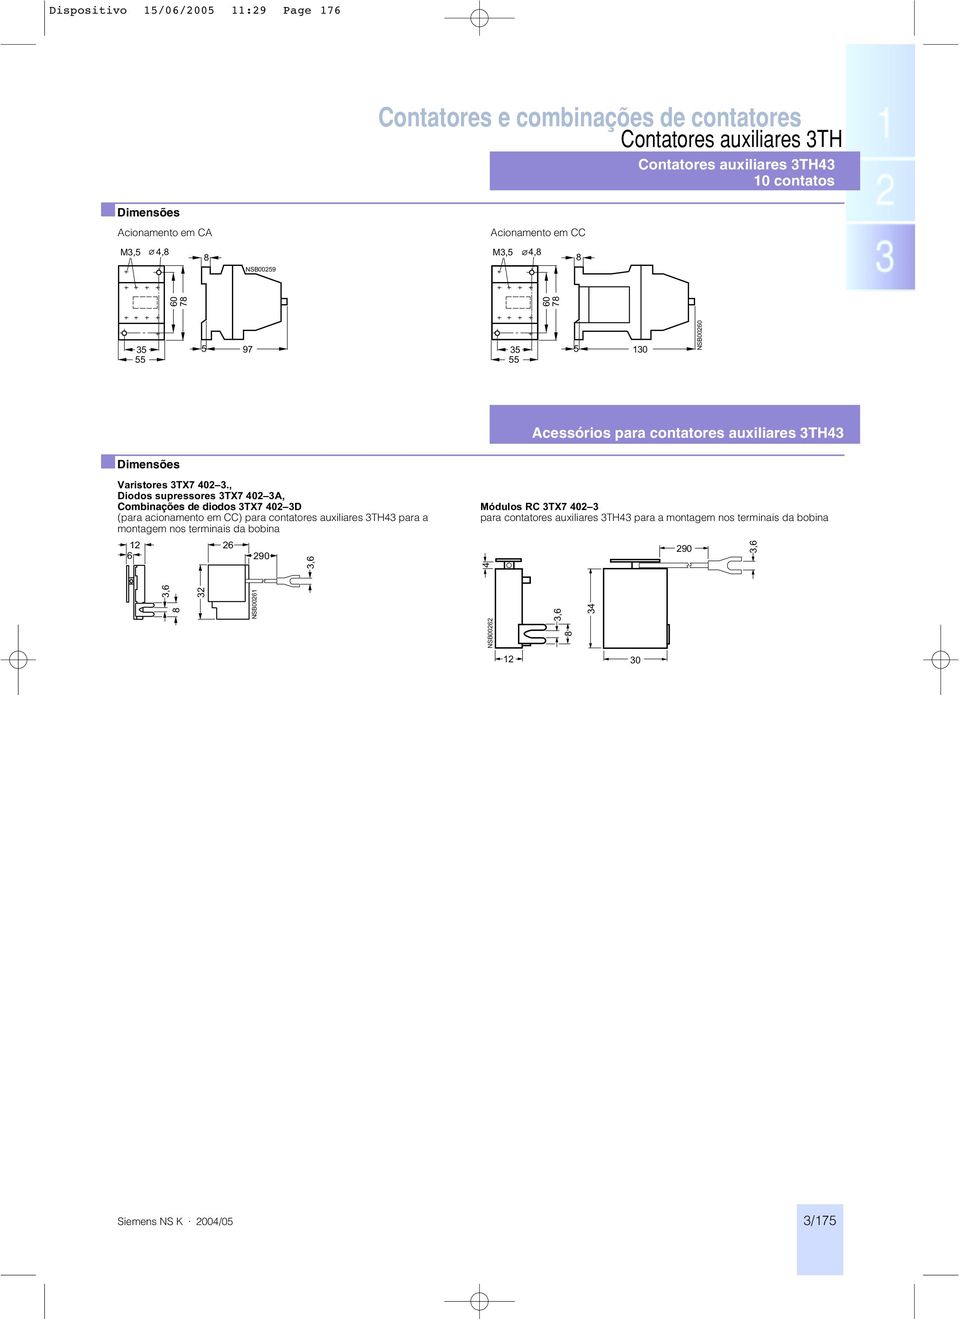 , Diodos supressores 3TX7 402 3A, Combinações de diodos 3TX7 402 3D (para acionamento em CC) para contatores